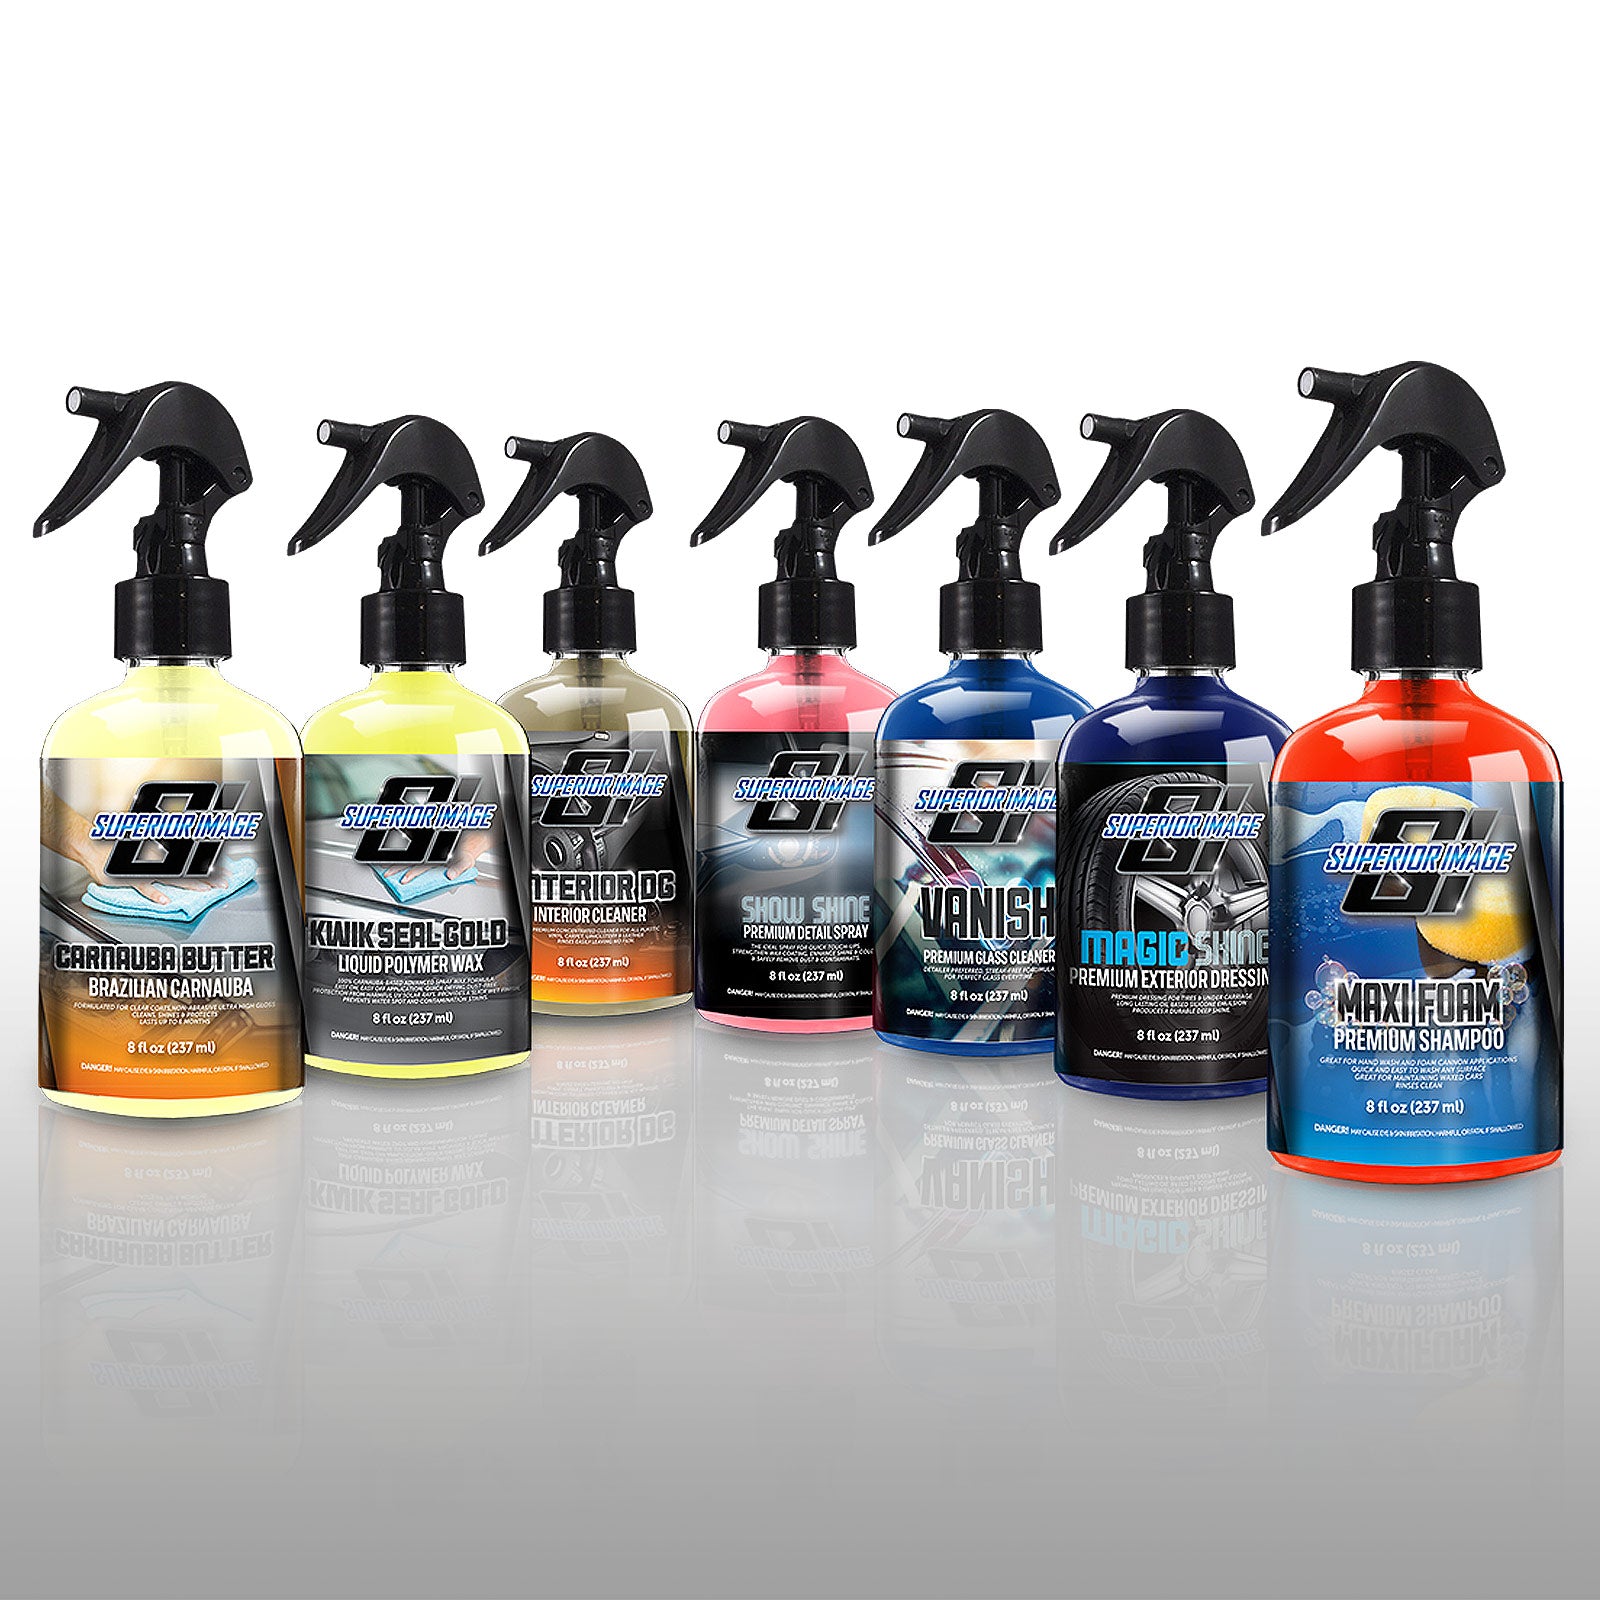 SICC Fountain Car/Truck/Van/RV Wash Brush – Superior Image Car Wash Supplies